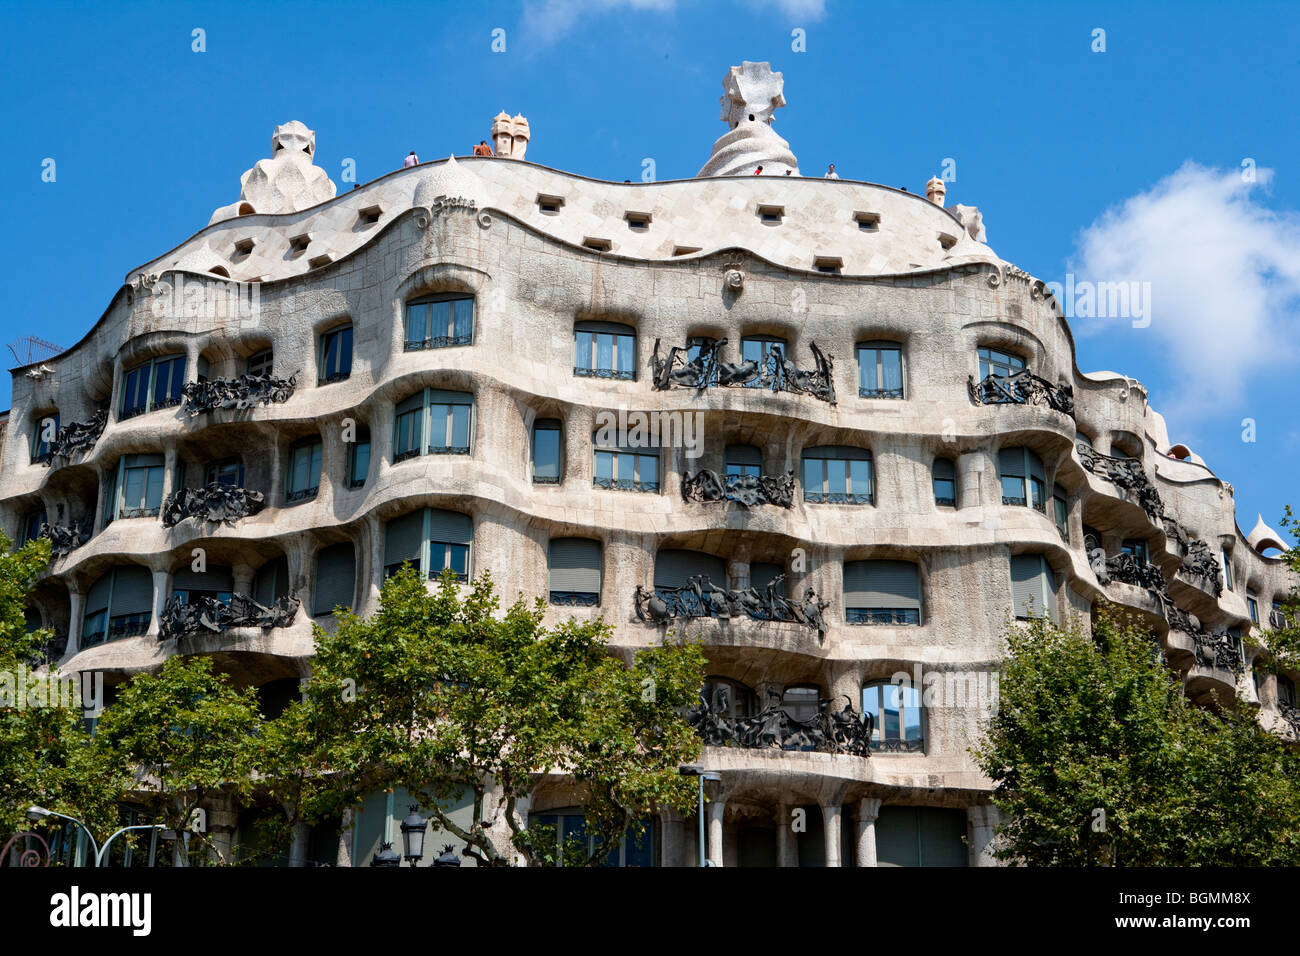 Barcelona - Spanisch-Art-Nouveau-Bewegung - Modernisme - Gaudi - Stadtteil Eixample - Casa Mila oder "La Pedrera" - Gaudi Stockfoto